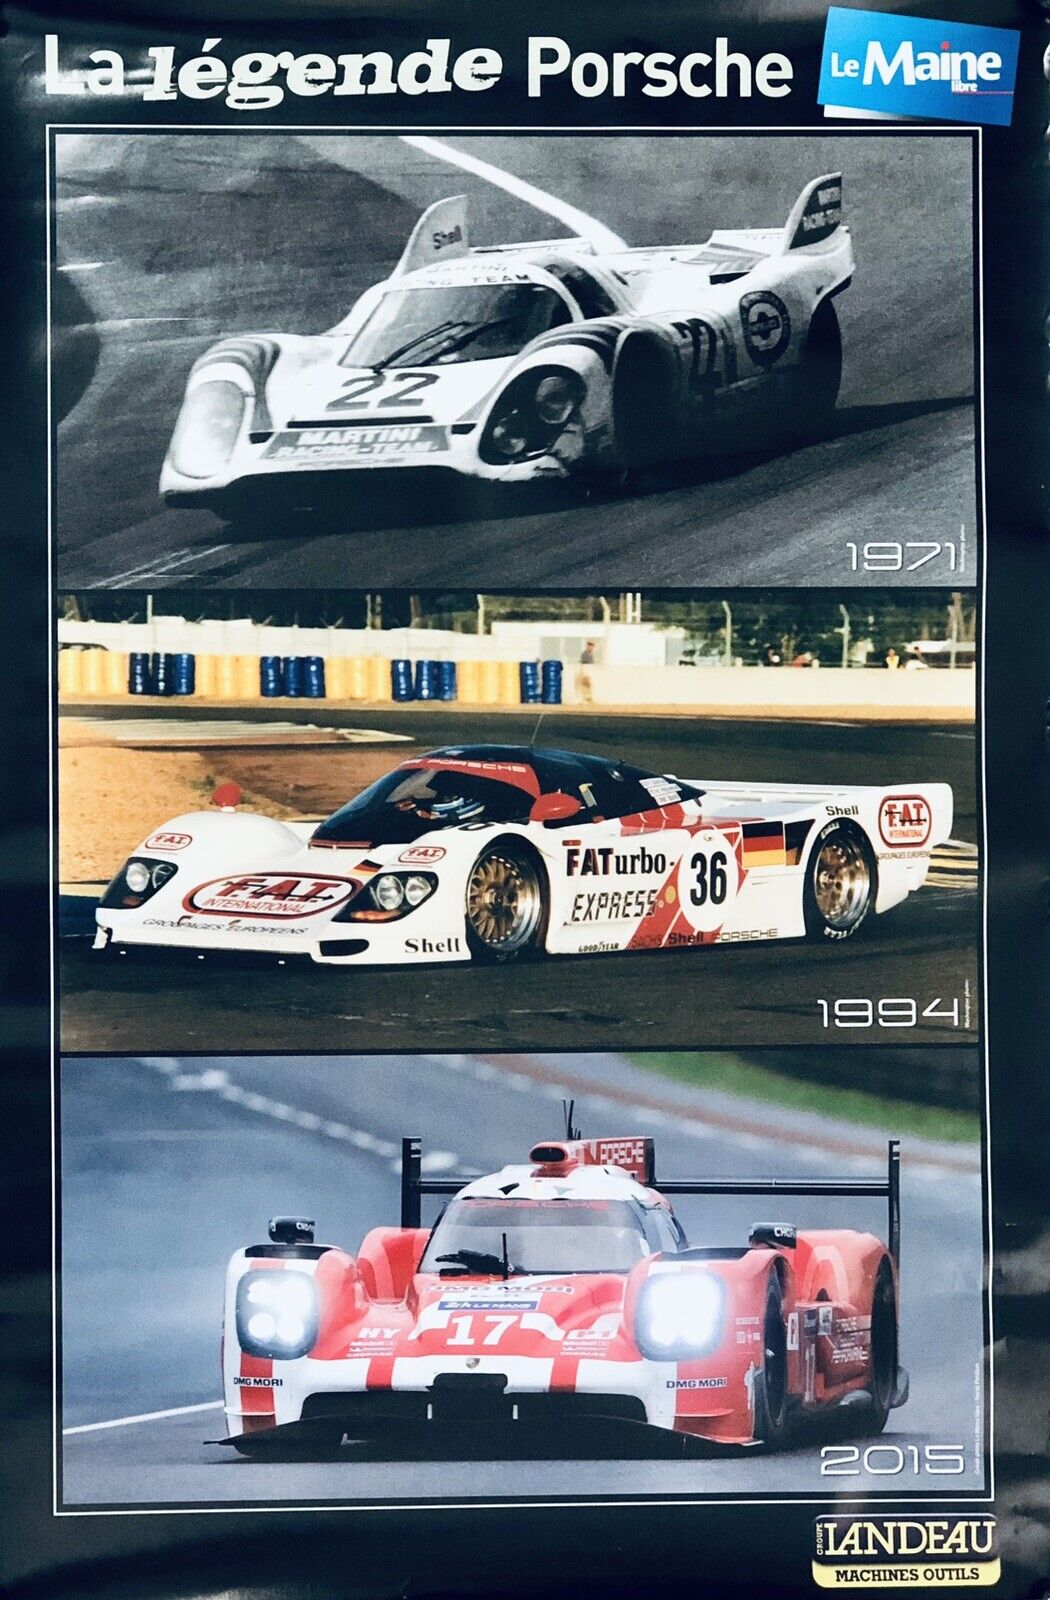 24 hours of Le Mans  / La Légende Porsche 1971, 1994, 2015 Poster 23.5x16 Inch